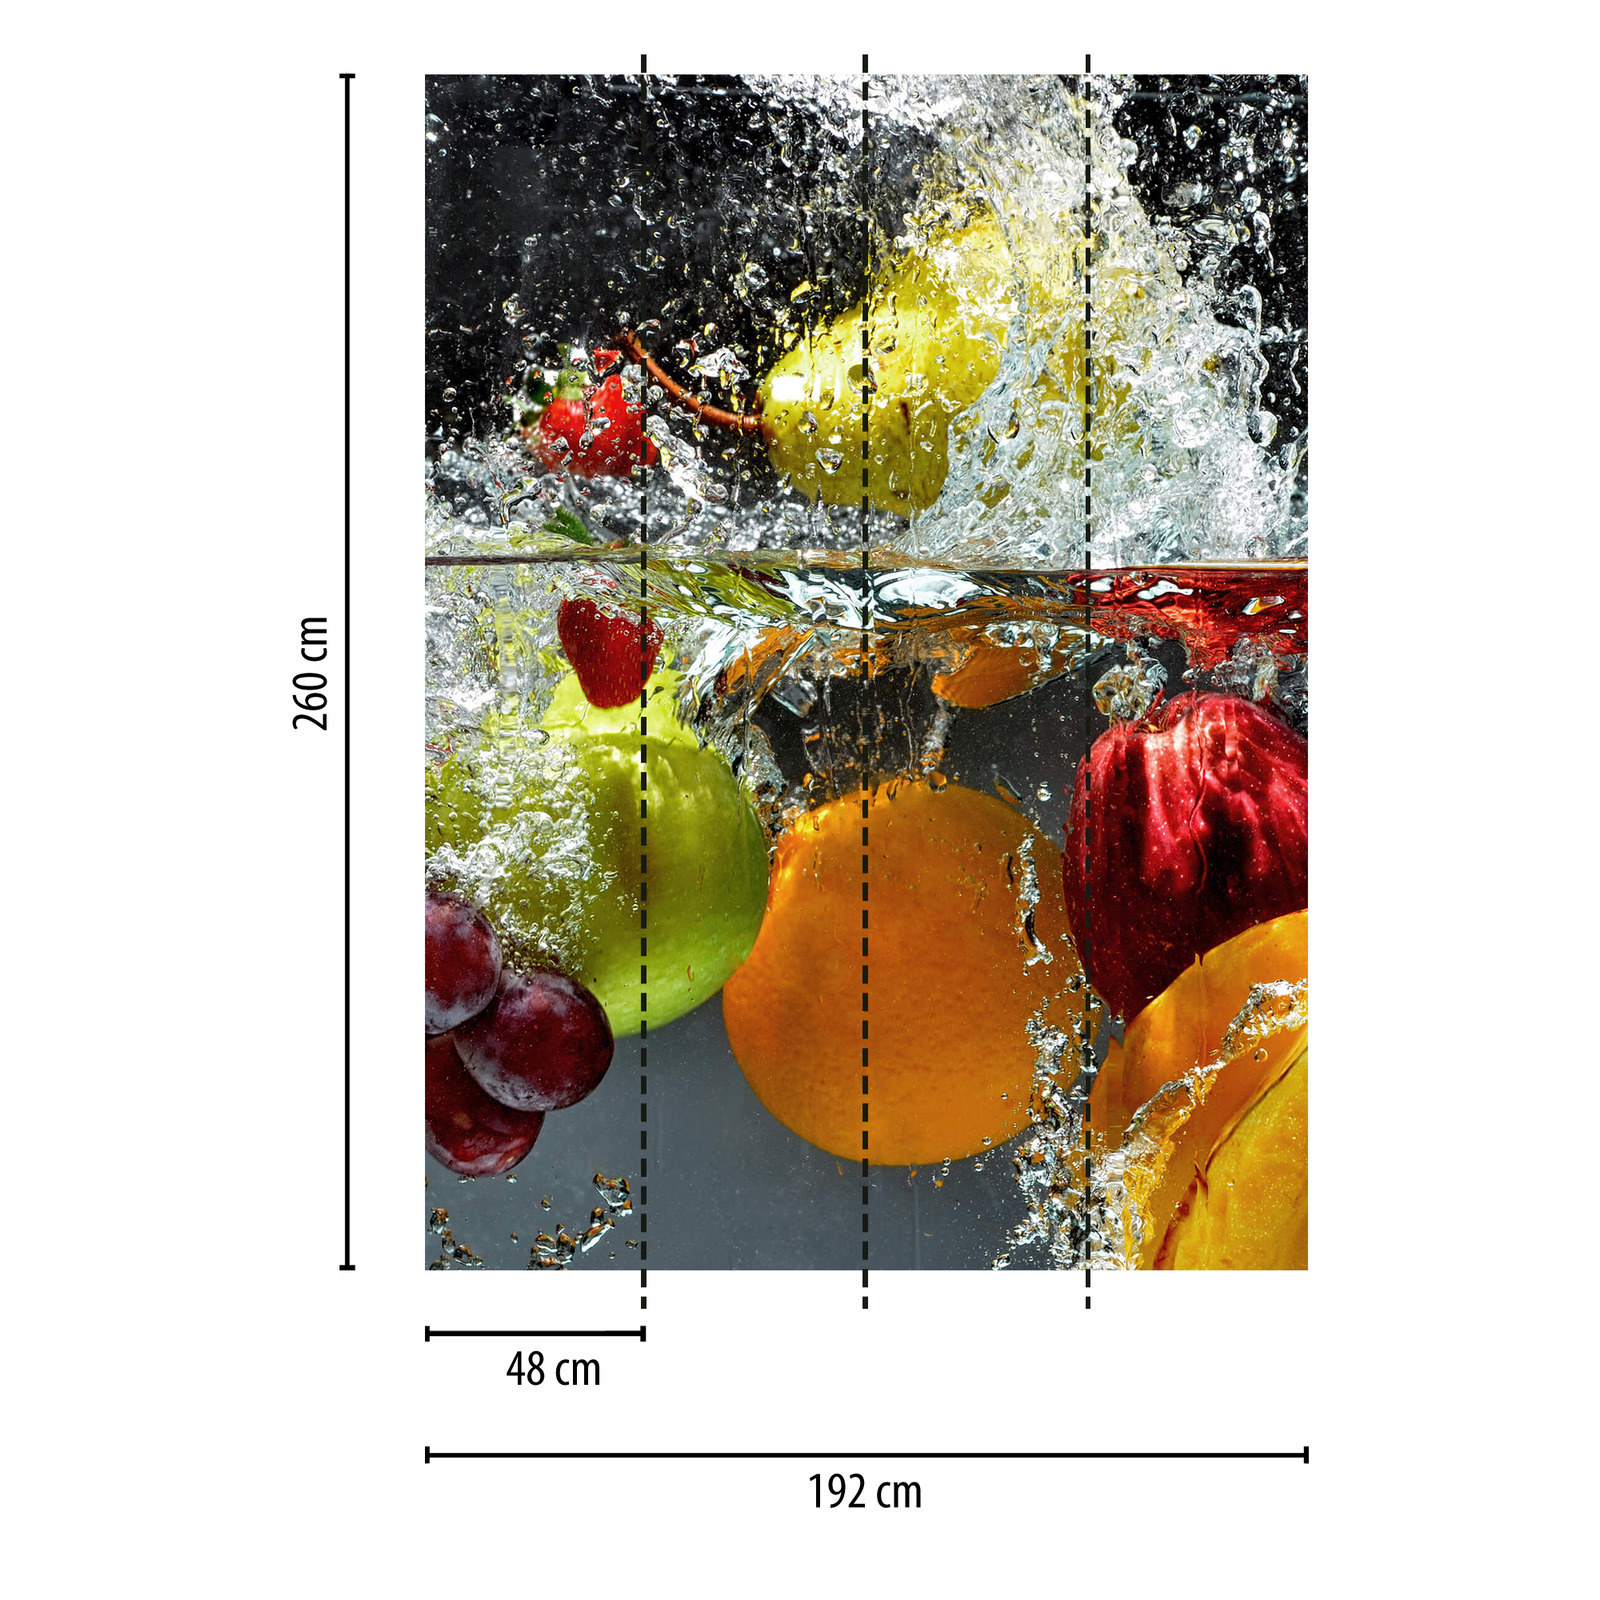             Fototapete Obst im Wasser, Hochformat – Bunt, Gelb, Rot
        